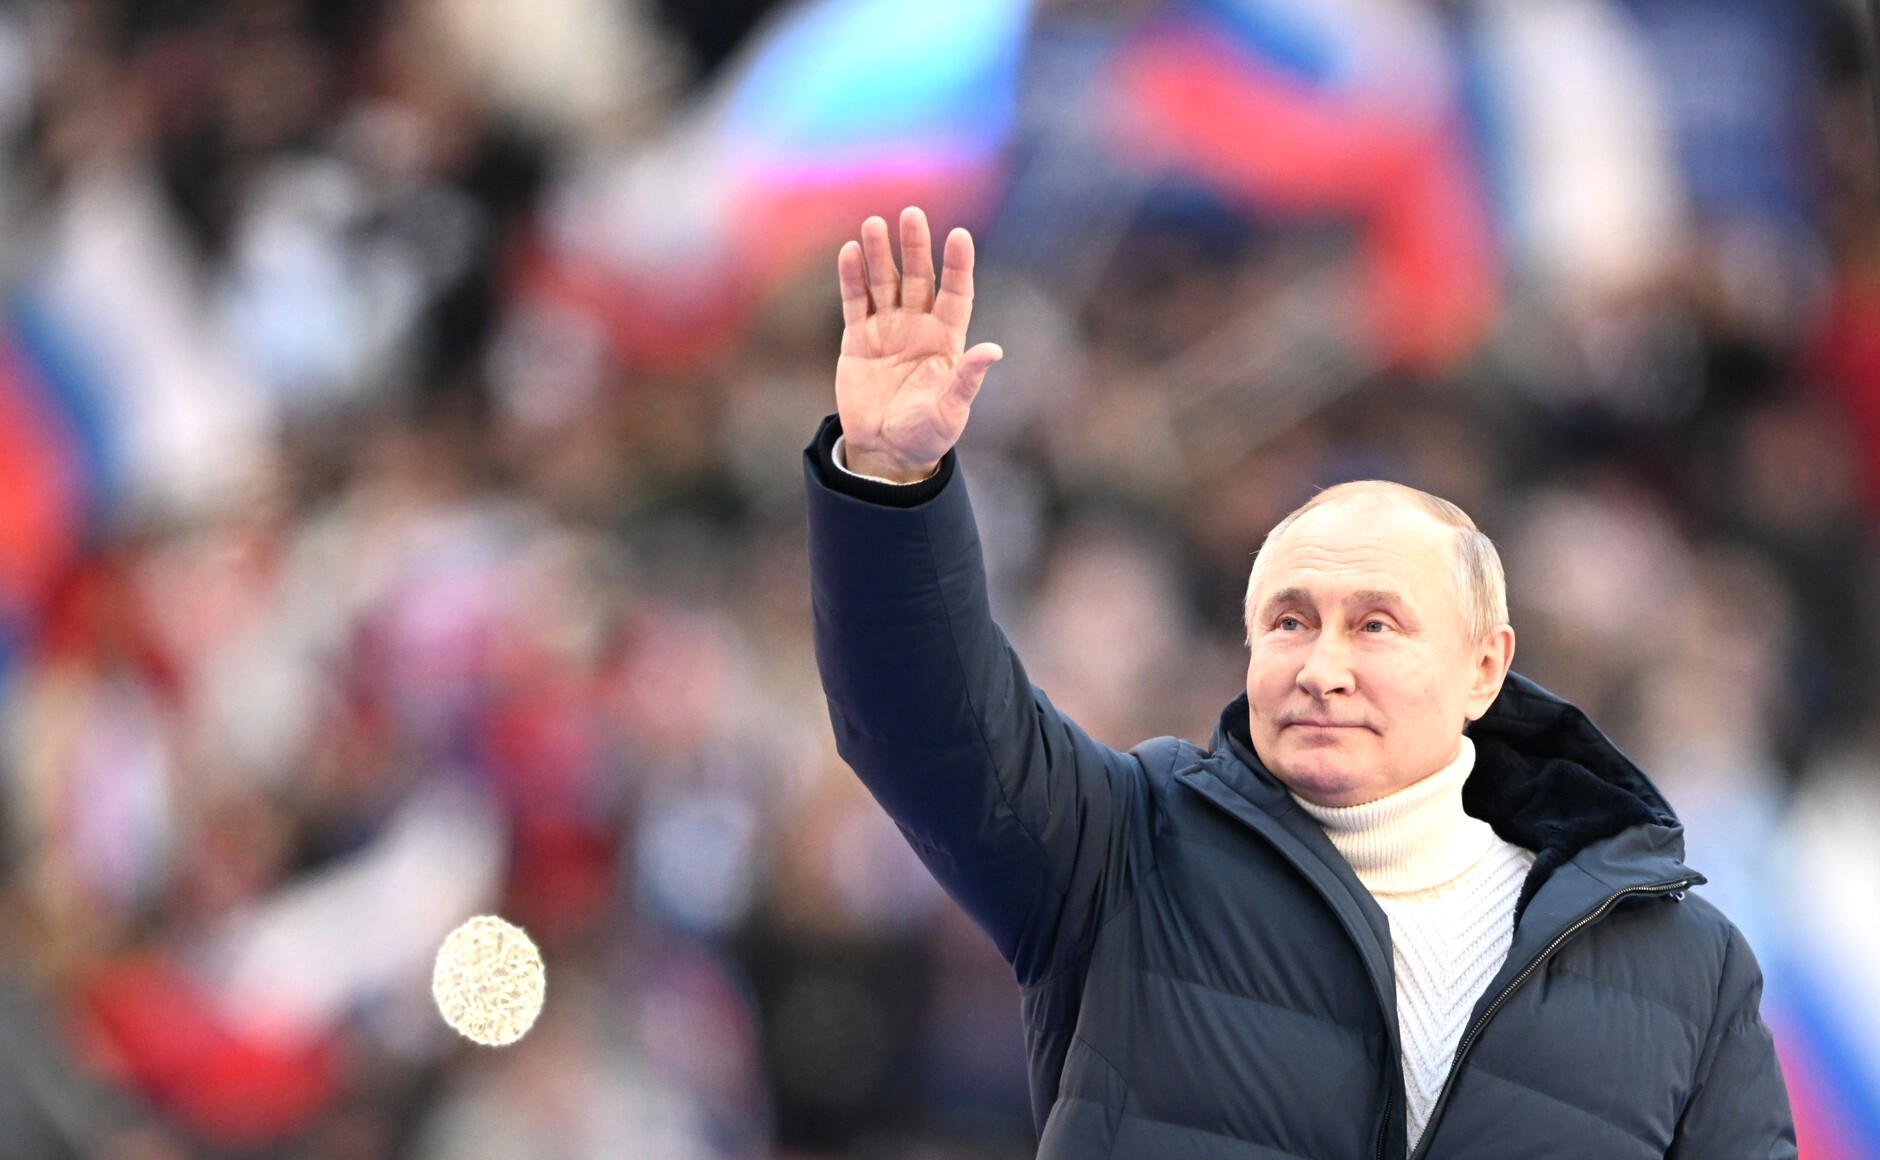 Hoe zal de informatieoorlog de komende Russische verkiezingen beïnvloeden?